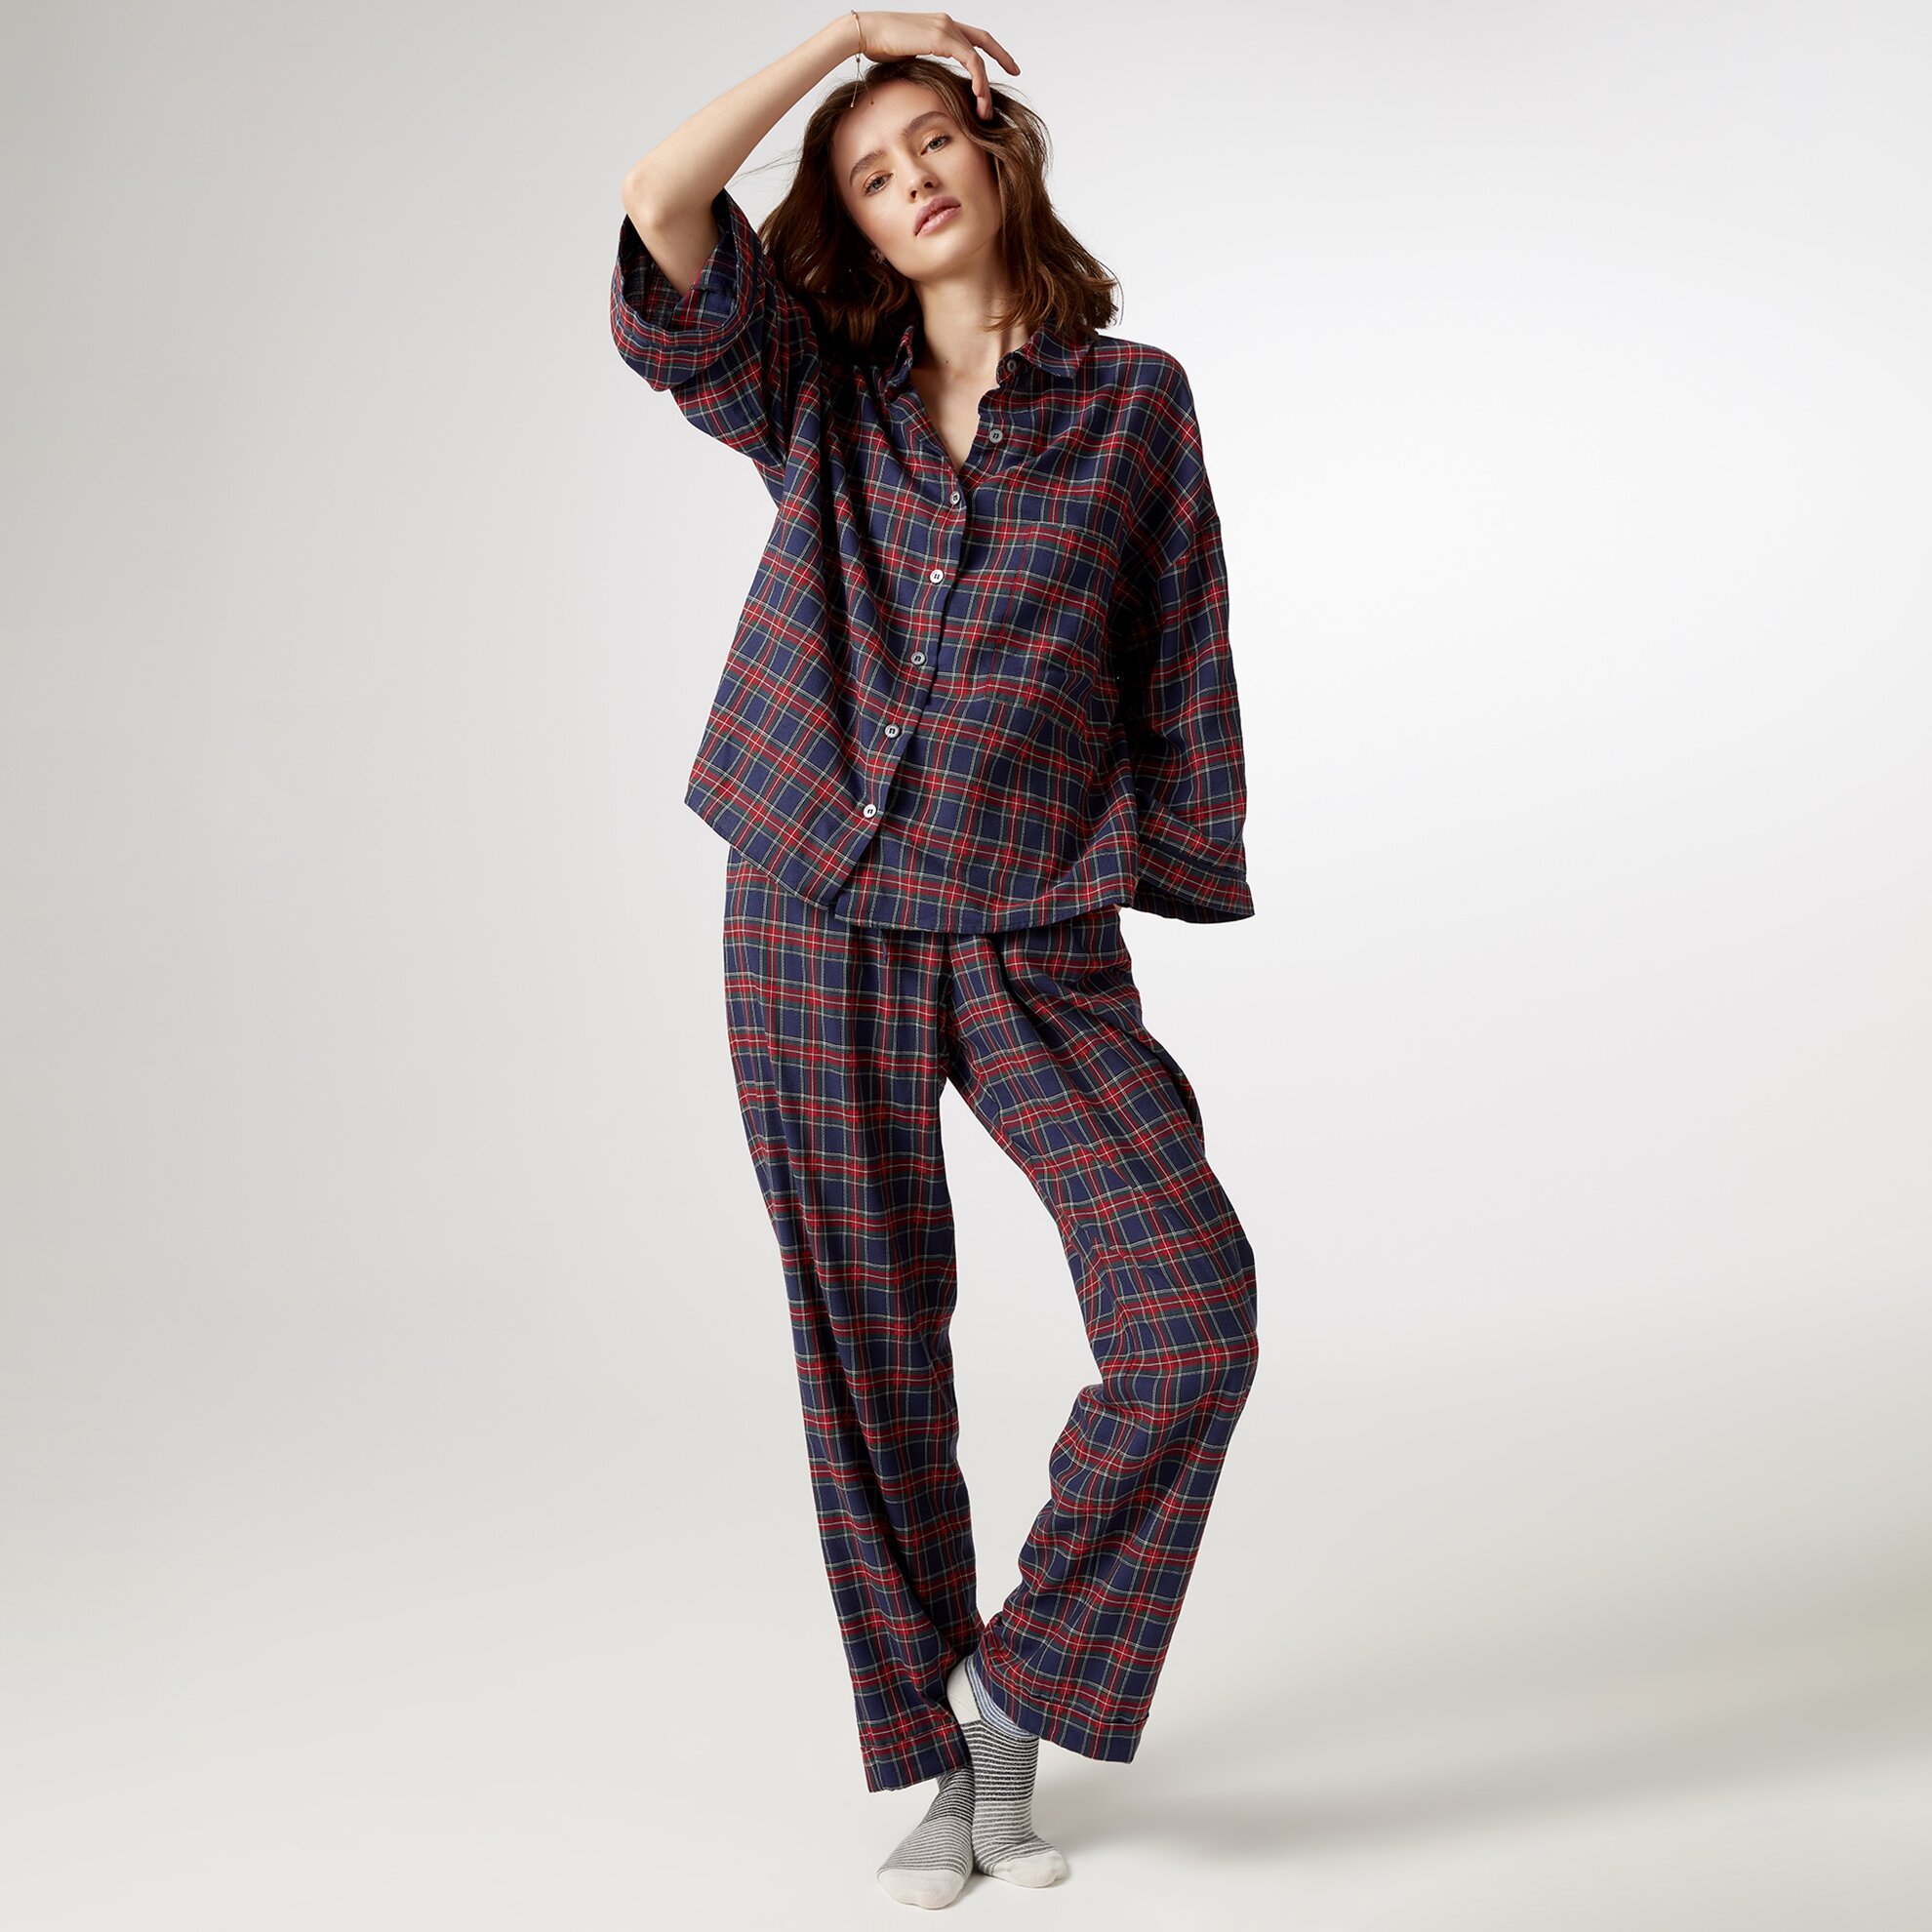 Grogren Detaylı Pijama Altı